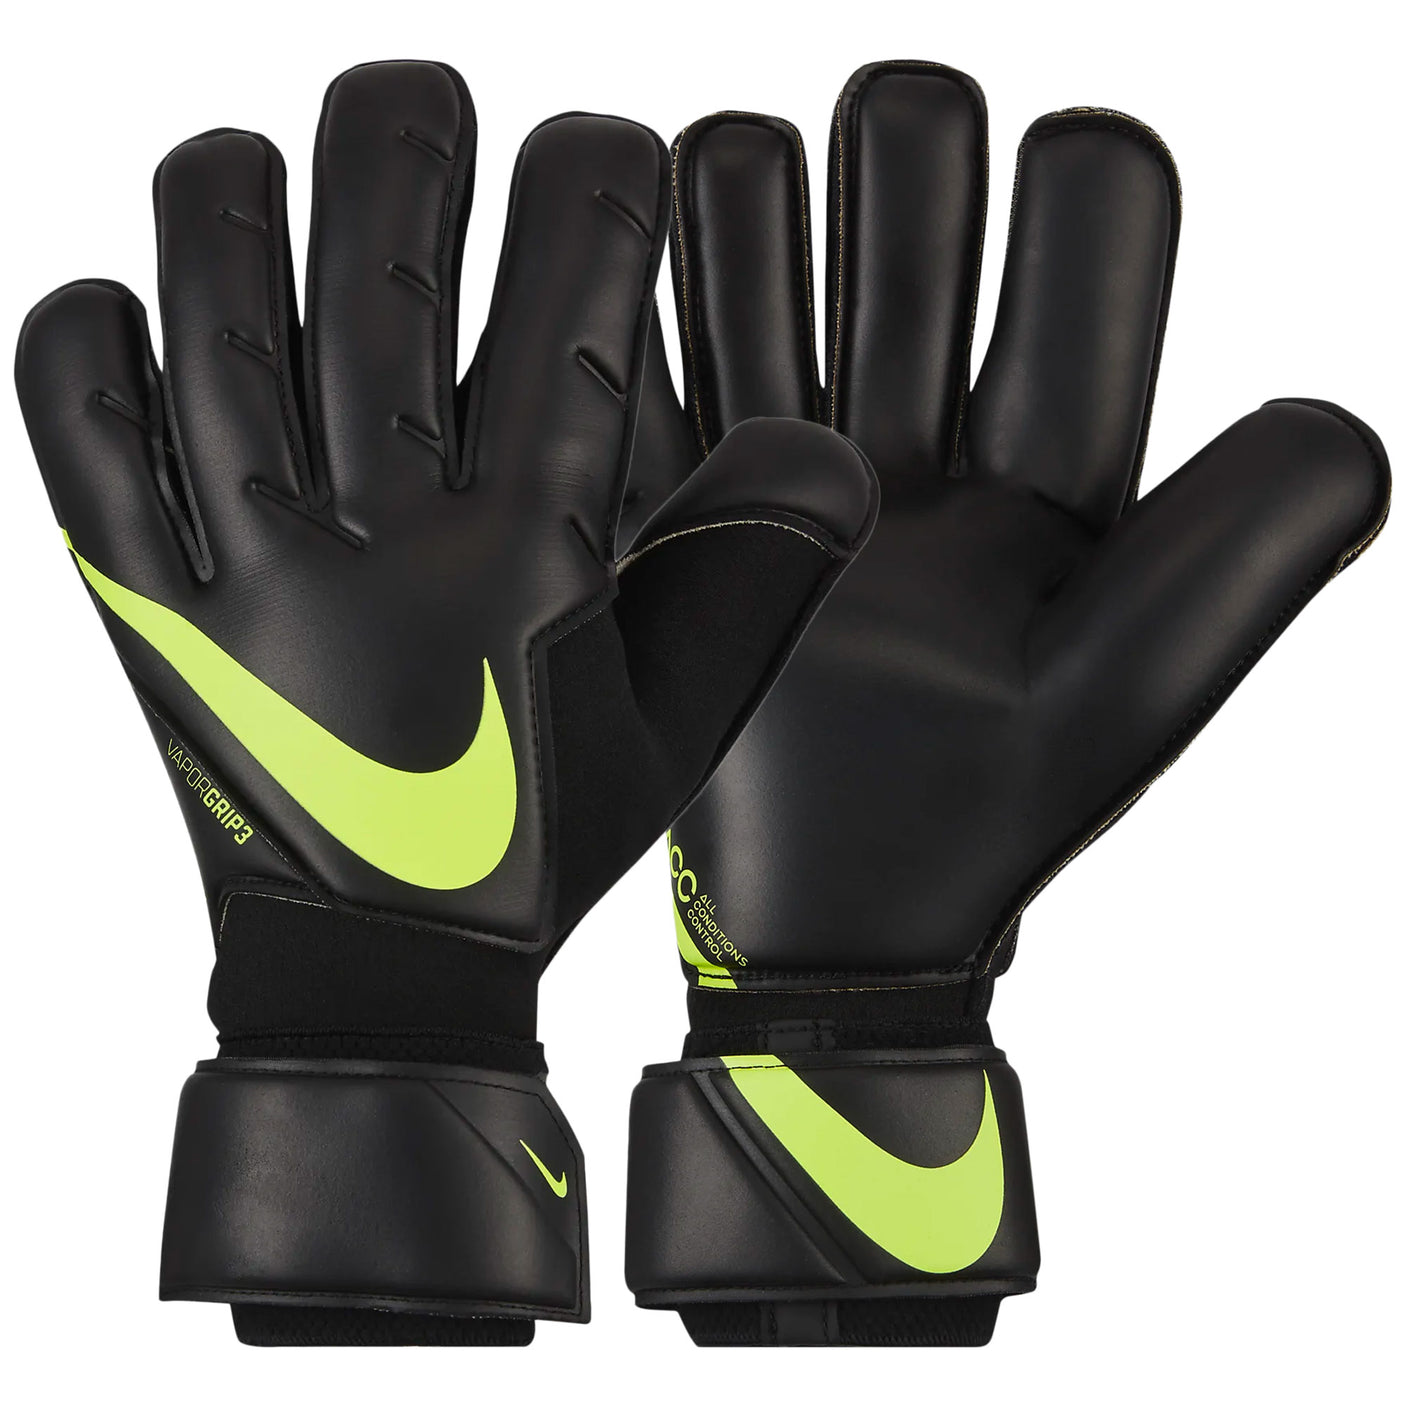 Nike Men's Vapor Grip 3 Goalkeeper Gloves Black/Volt Pair